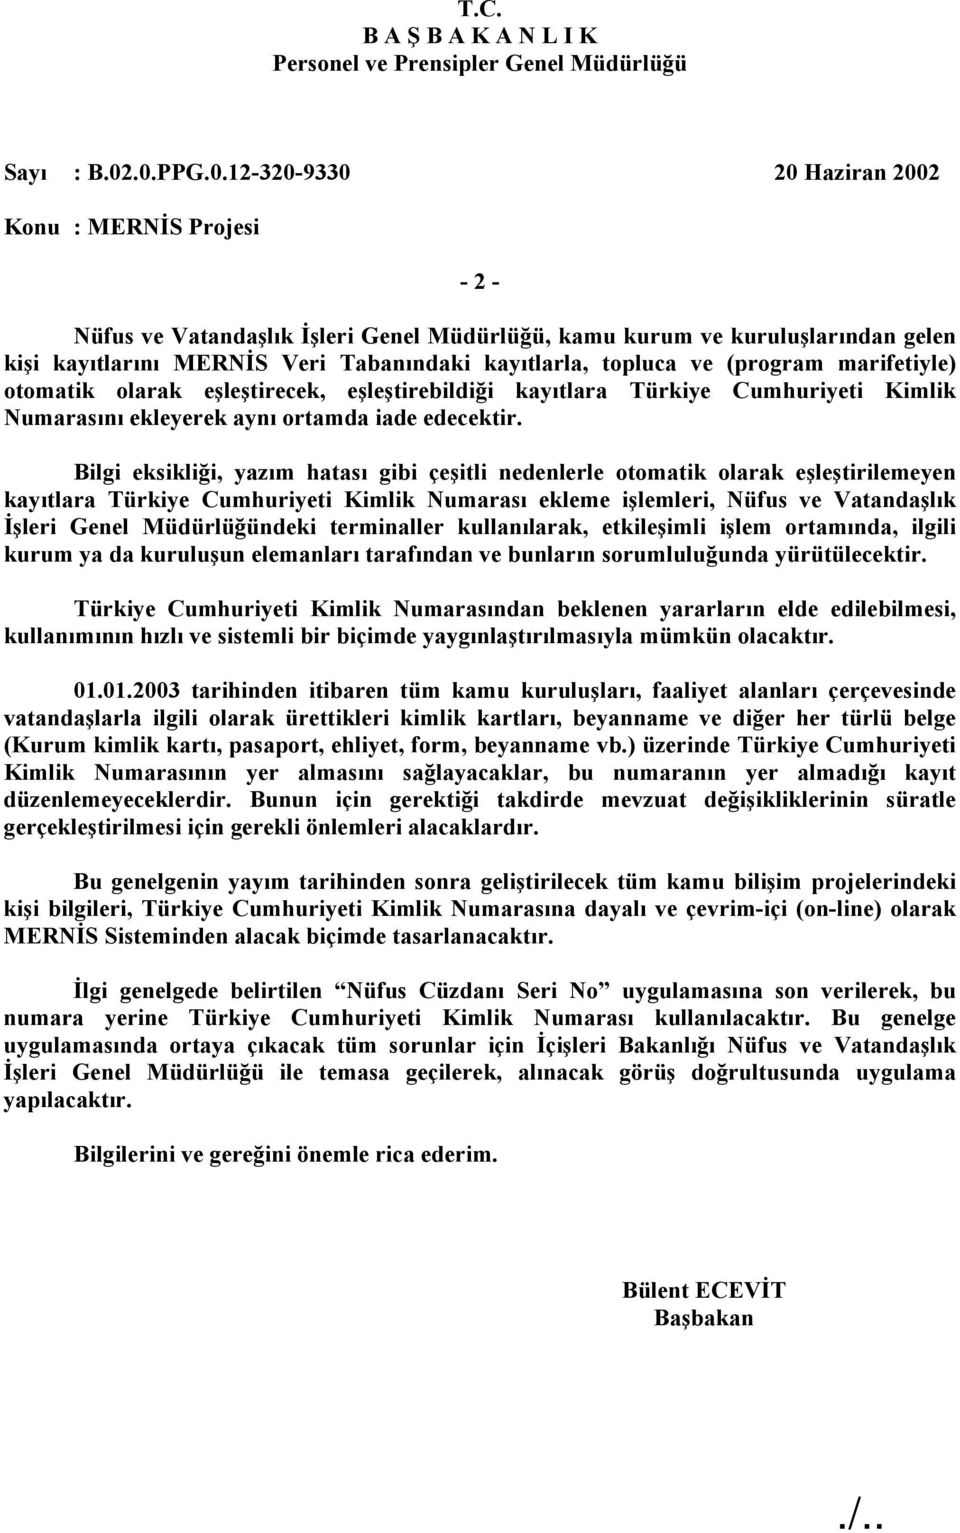 Bilgi eksikliği, yazım hatası gibi çeşitli nedenlerle otomatik olarak eşleştirilemeyen kayıtlara Türkiye Cumhuriyeti Kimlik Numarası ekleme işlemleri, Nüfus ve Vatandaşlık İşleri Genel Müdürlüğündeki